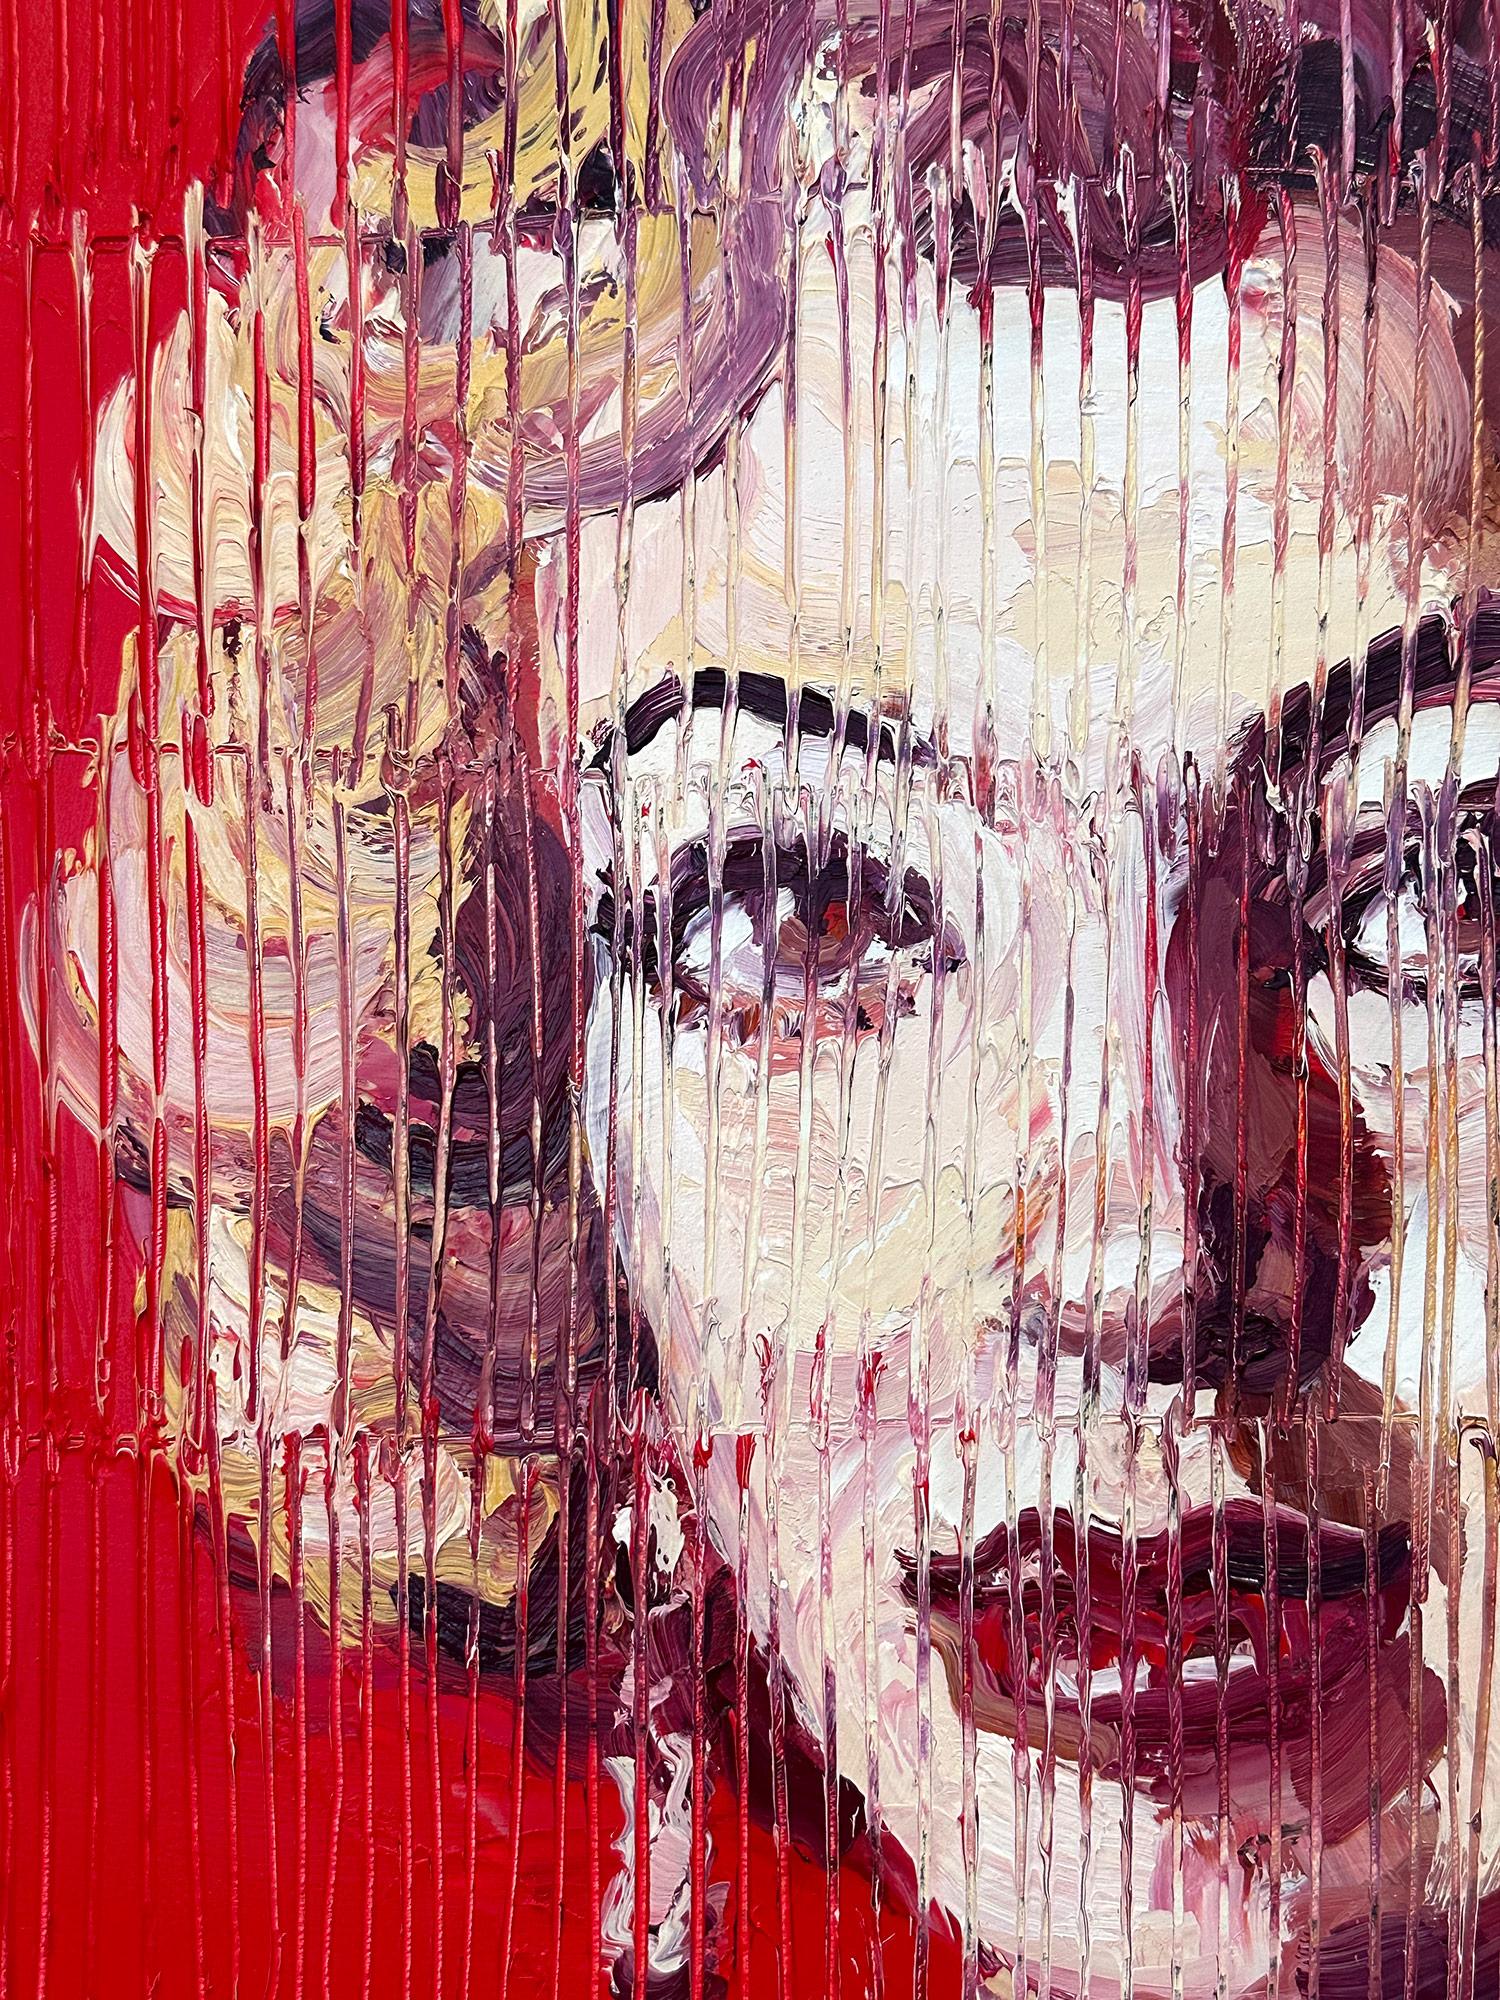 Eine wunderbare Komposition eines der ikonischsten Sujets von Slonem, Marilyn Monroe. Der dicke Farbauftrag ist deutlich zu erkennen, wenn er Schicht für Schicht rote und rosafarbene Ölfarbe aufträgt, die mit Kreuzschraffuren versehen ist. Das